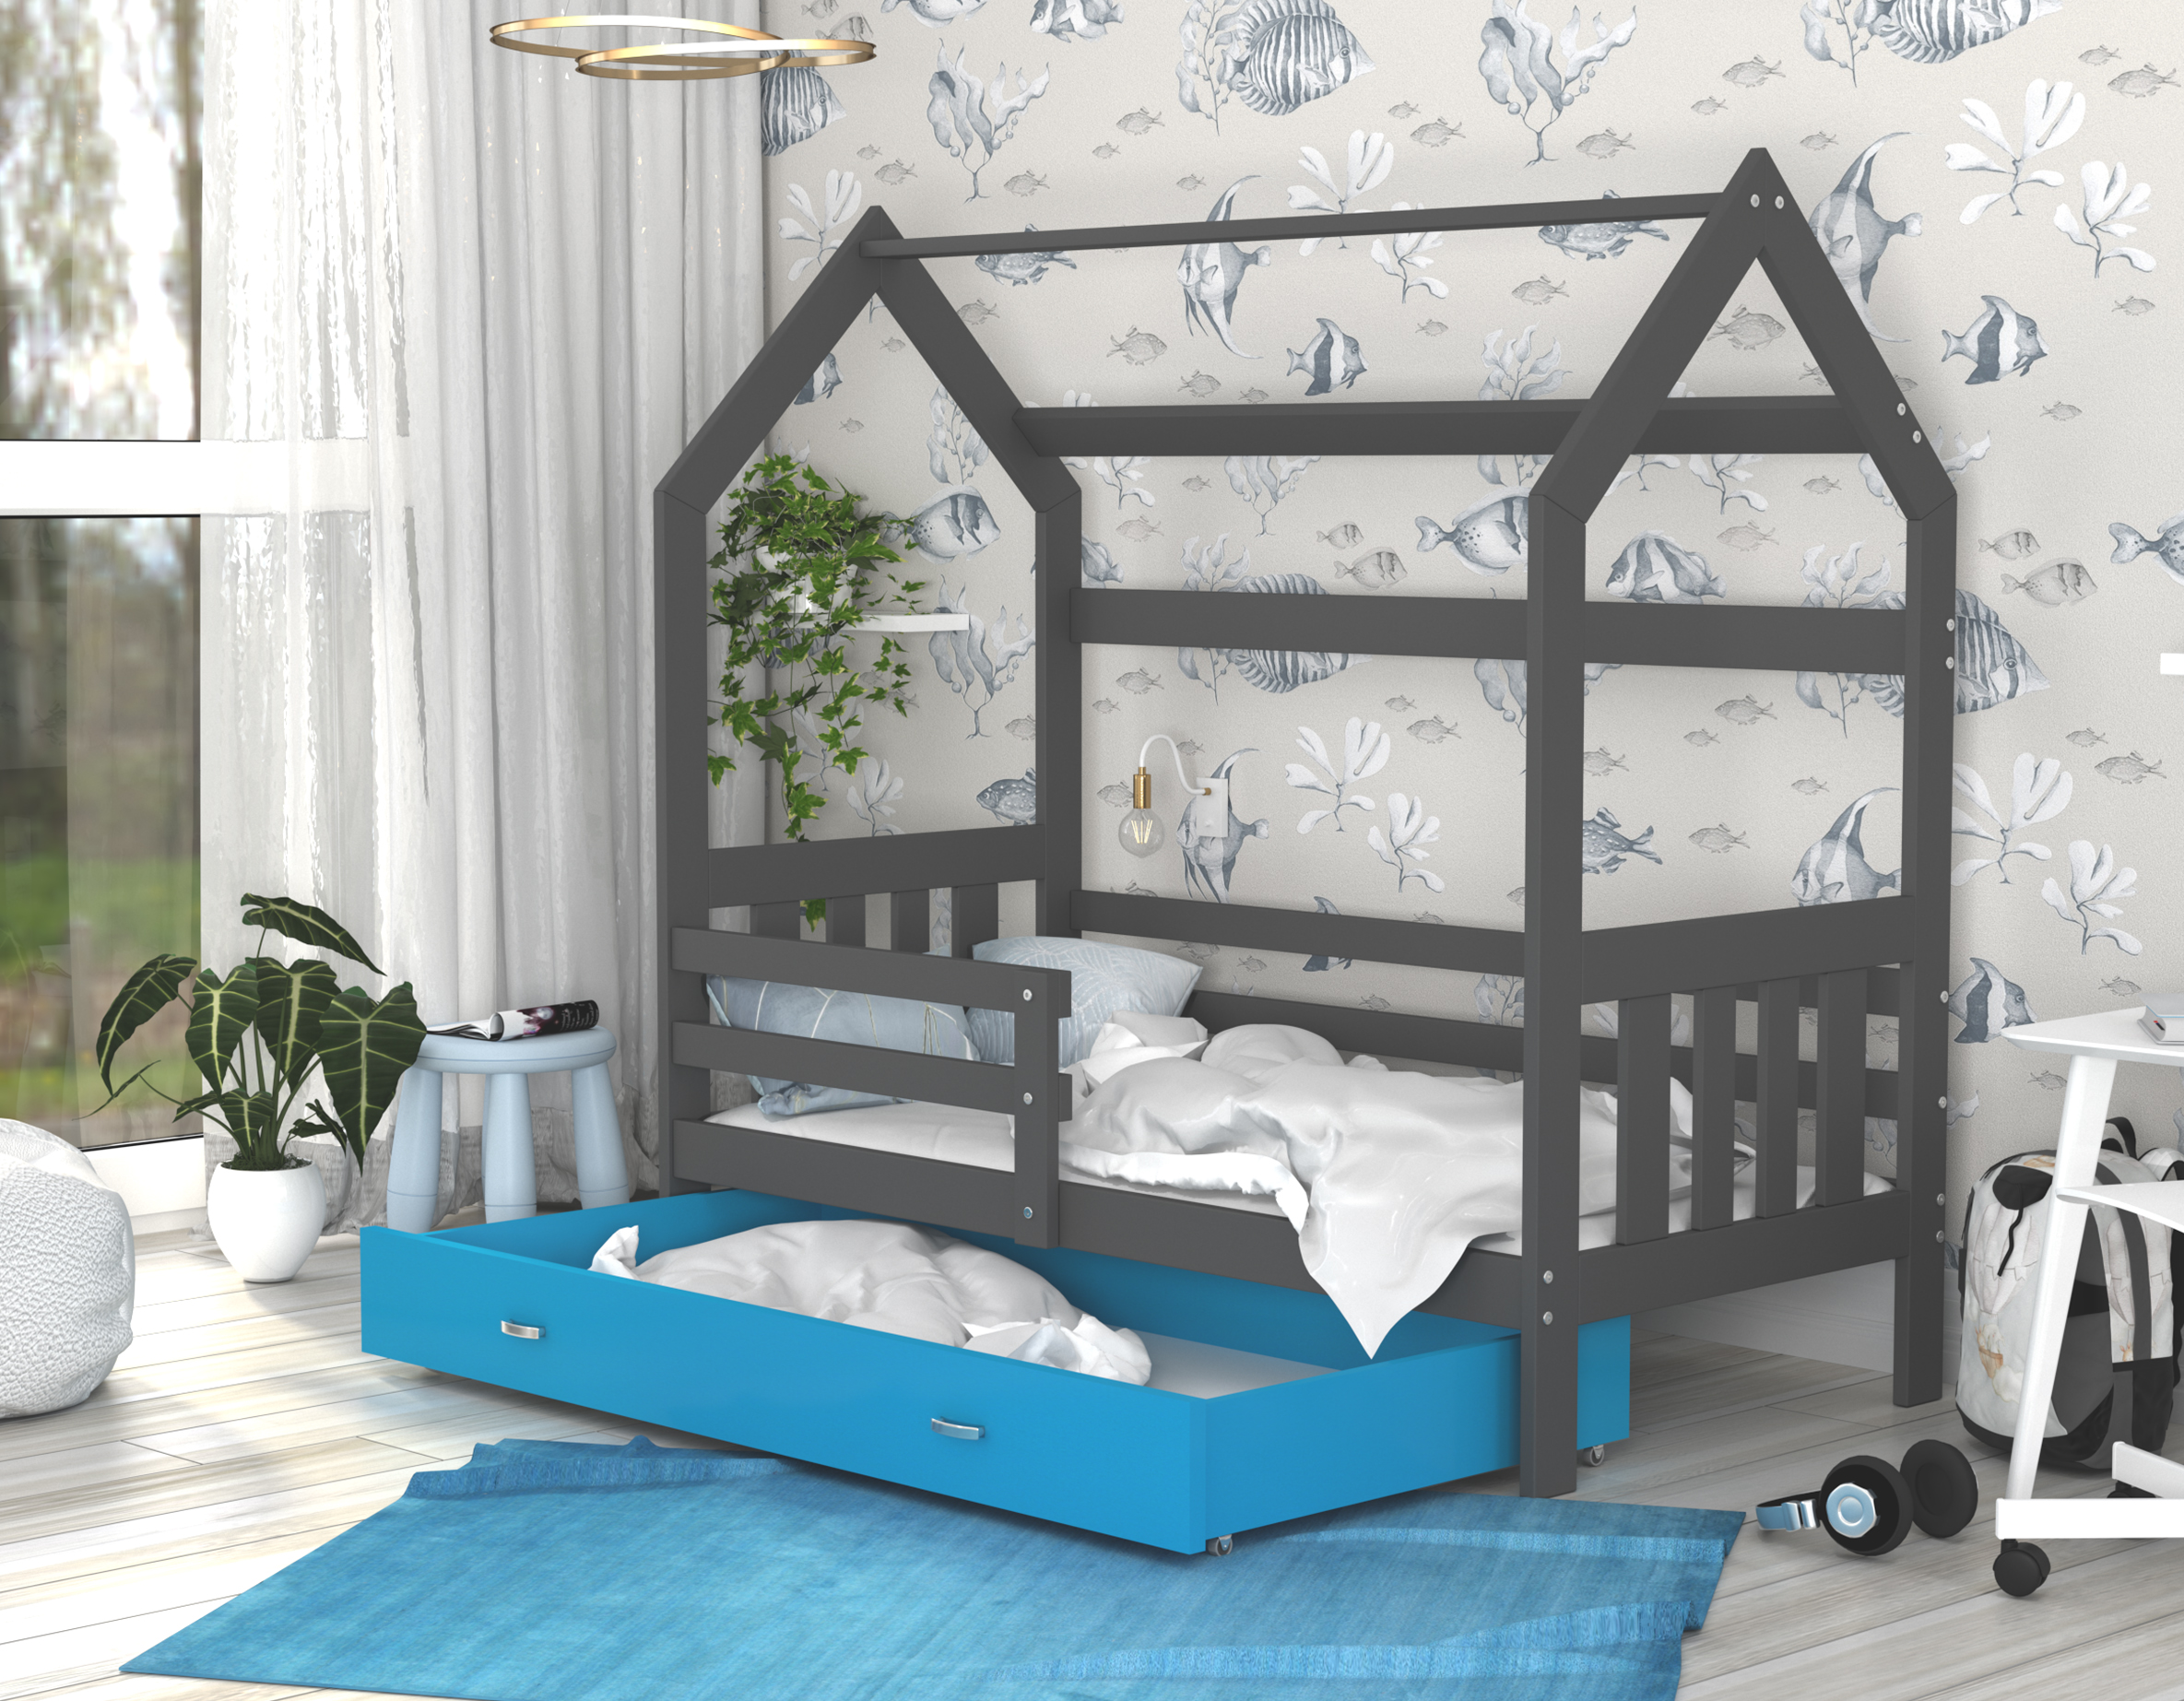 Dětská postel DOMEK 2 se šuplíkem 190x80 cm šedá modrá